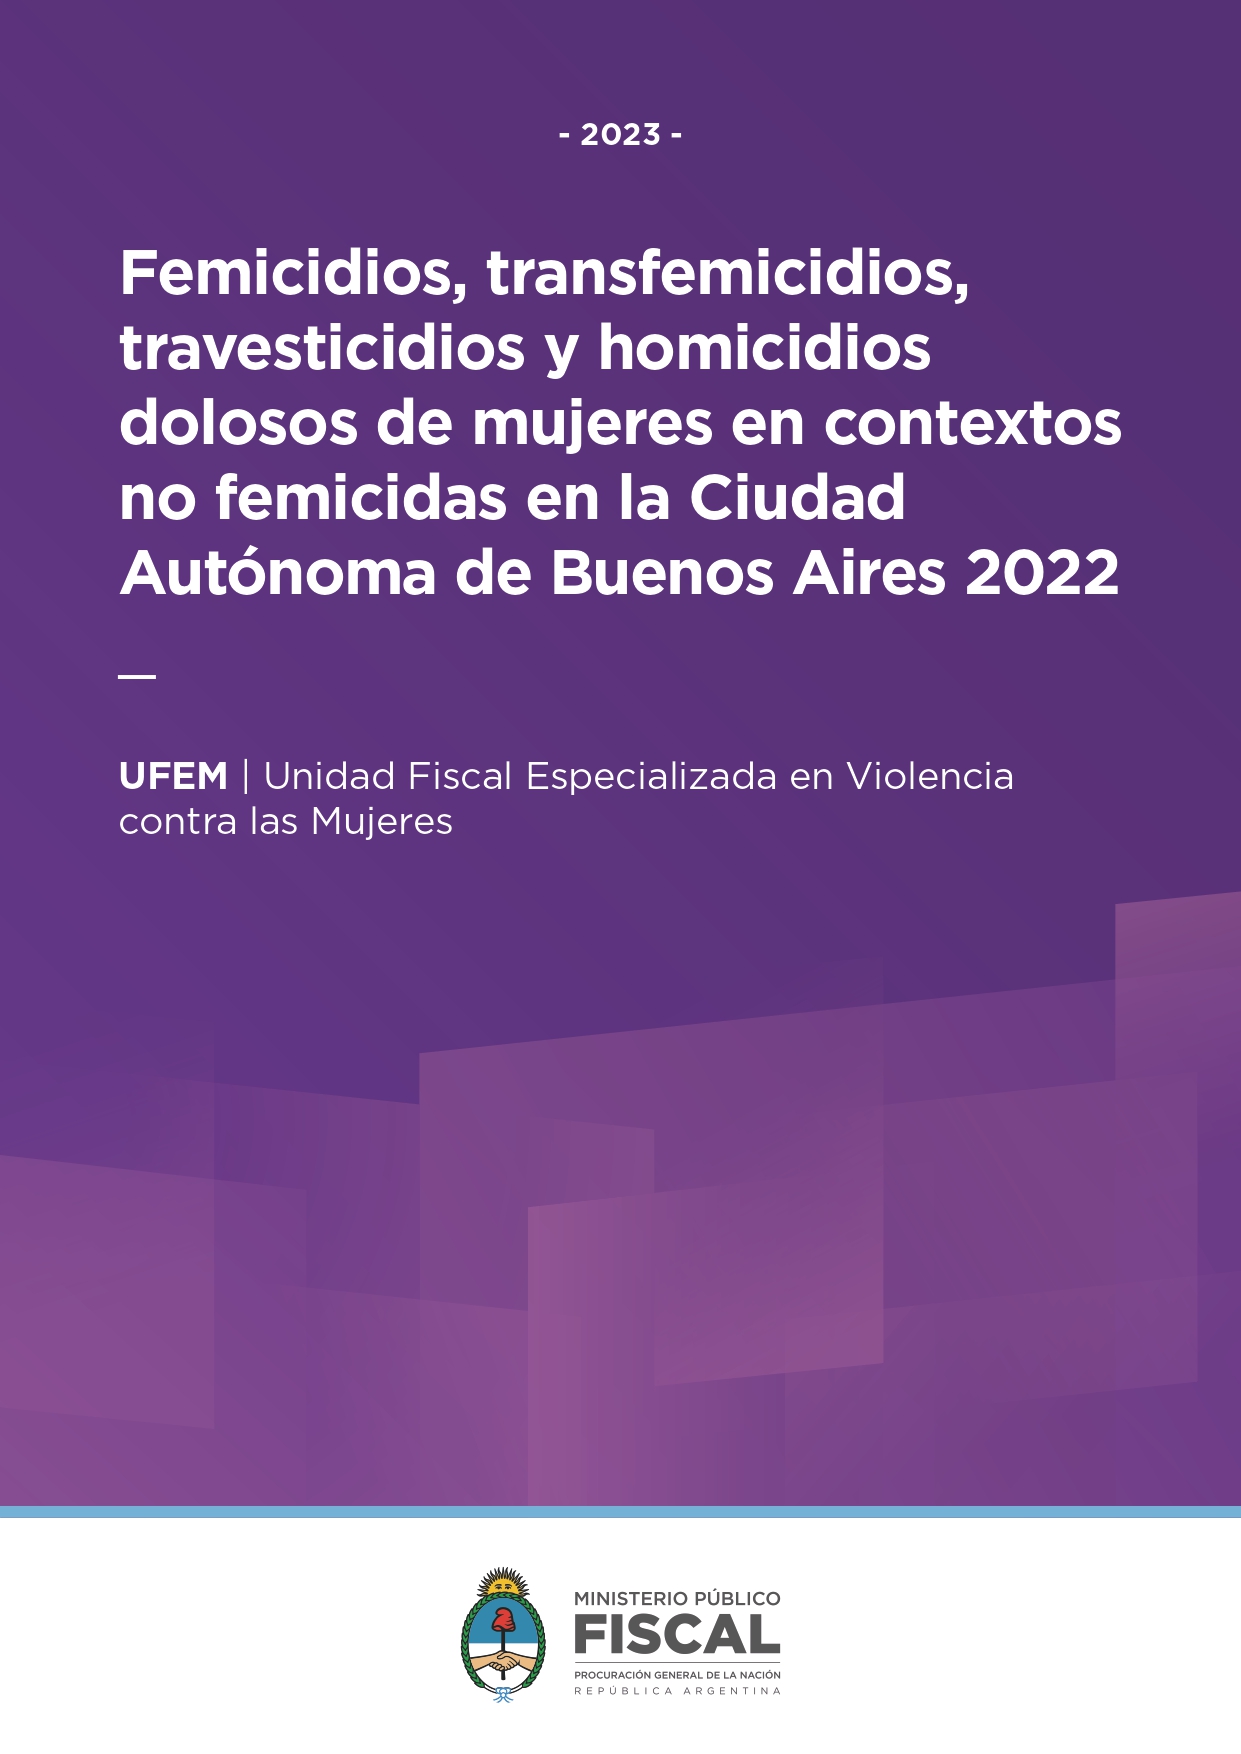 Femicidios, transfemicidios, travesticidios y homicidios dolosos de mujeres en contextos no femicidas, en la Ciudad Autónoma de Buenos Aires 2022